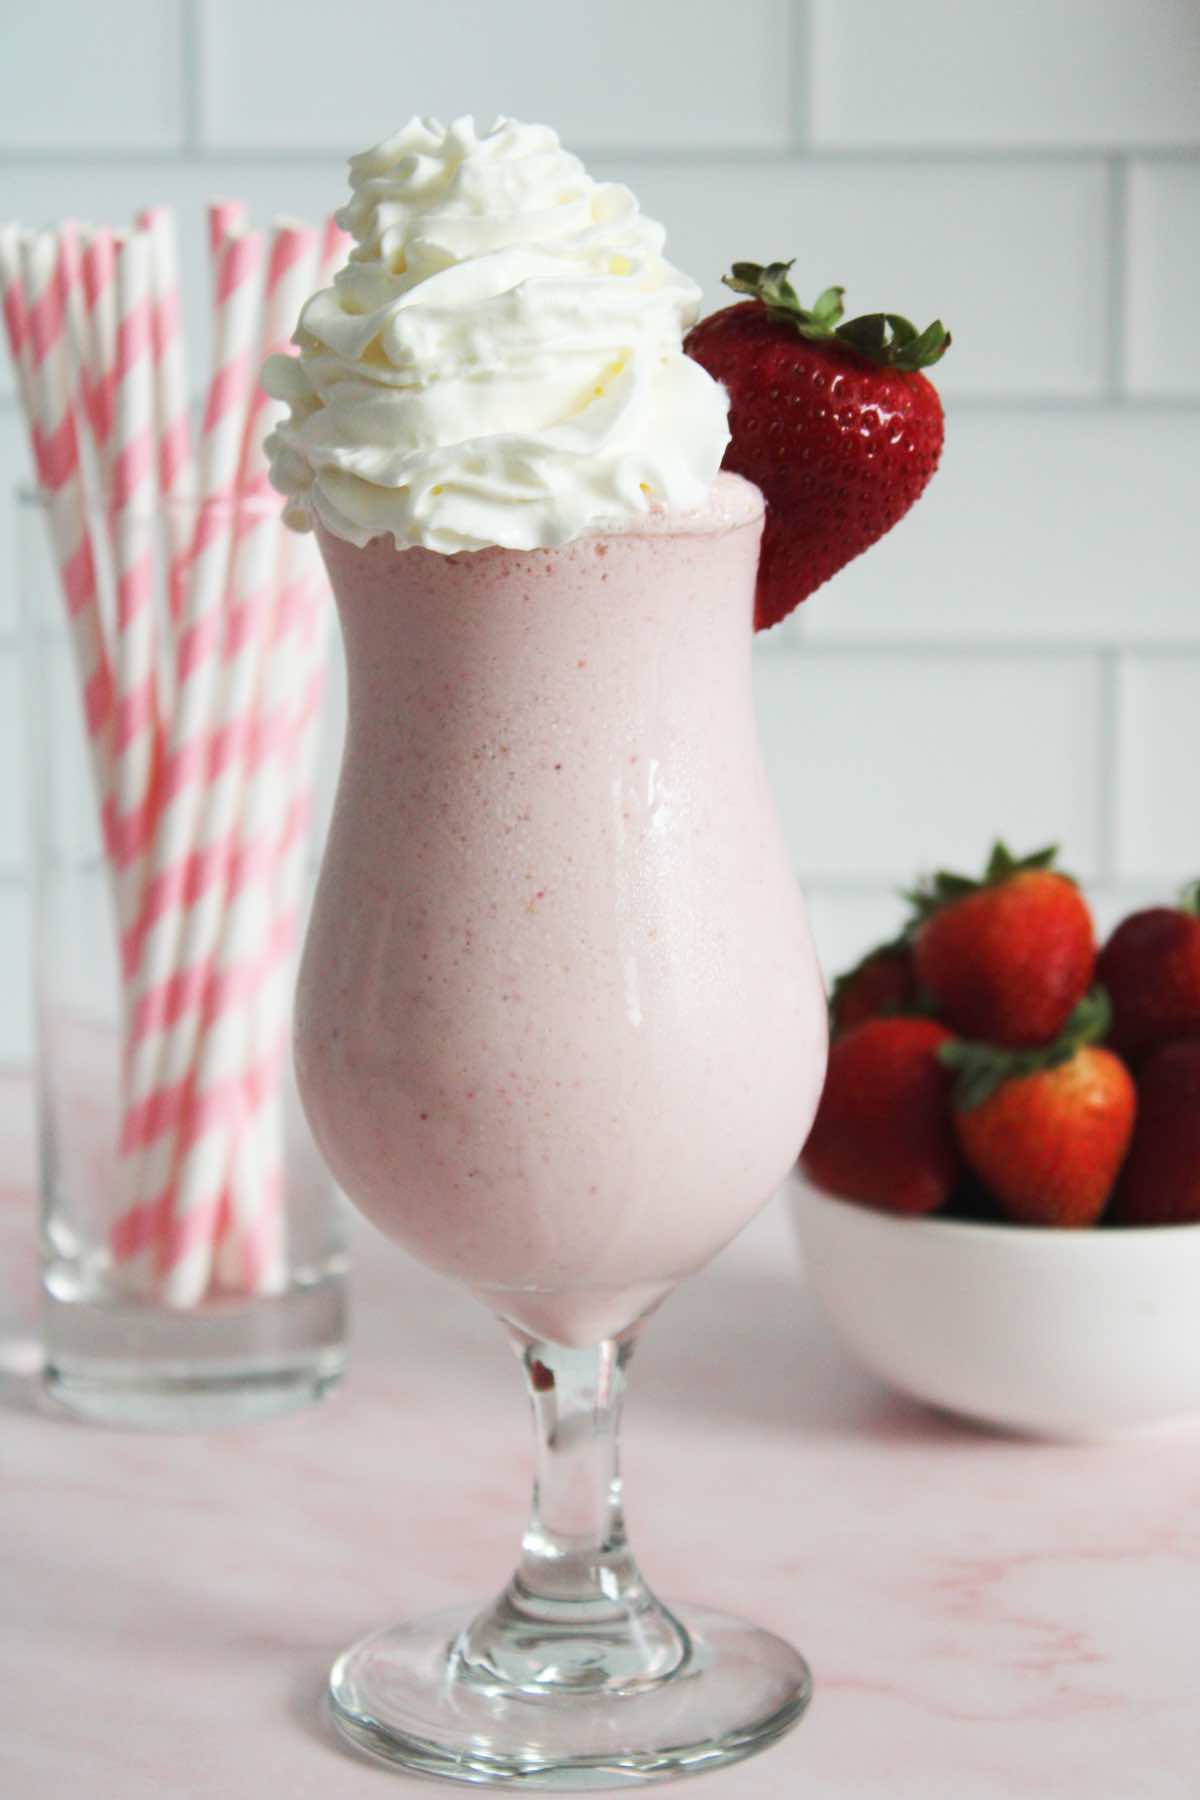 Homemade strawberry milkshake with strawberry ice cream.